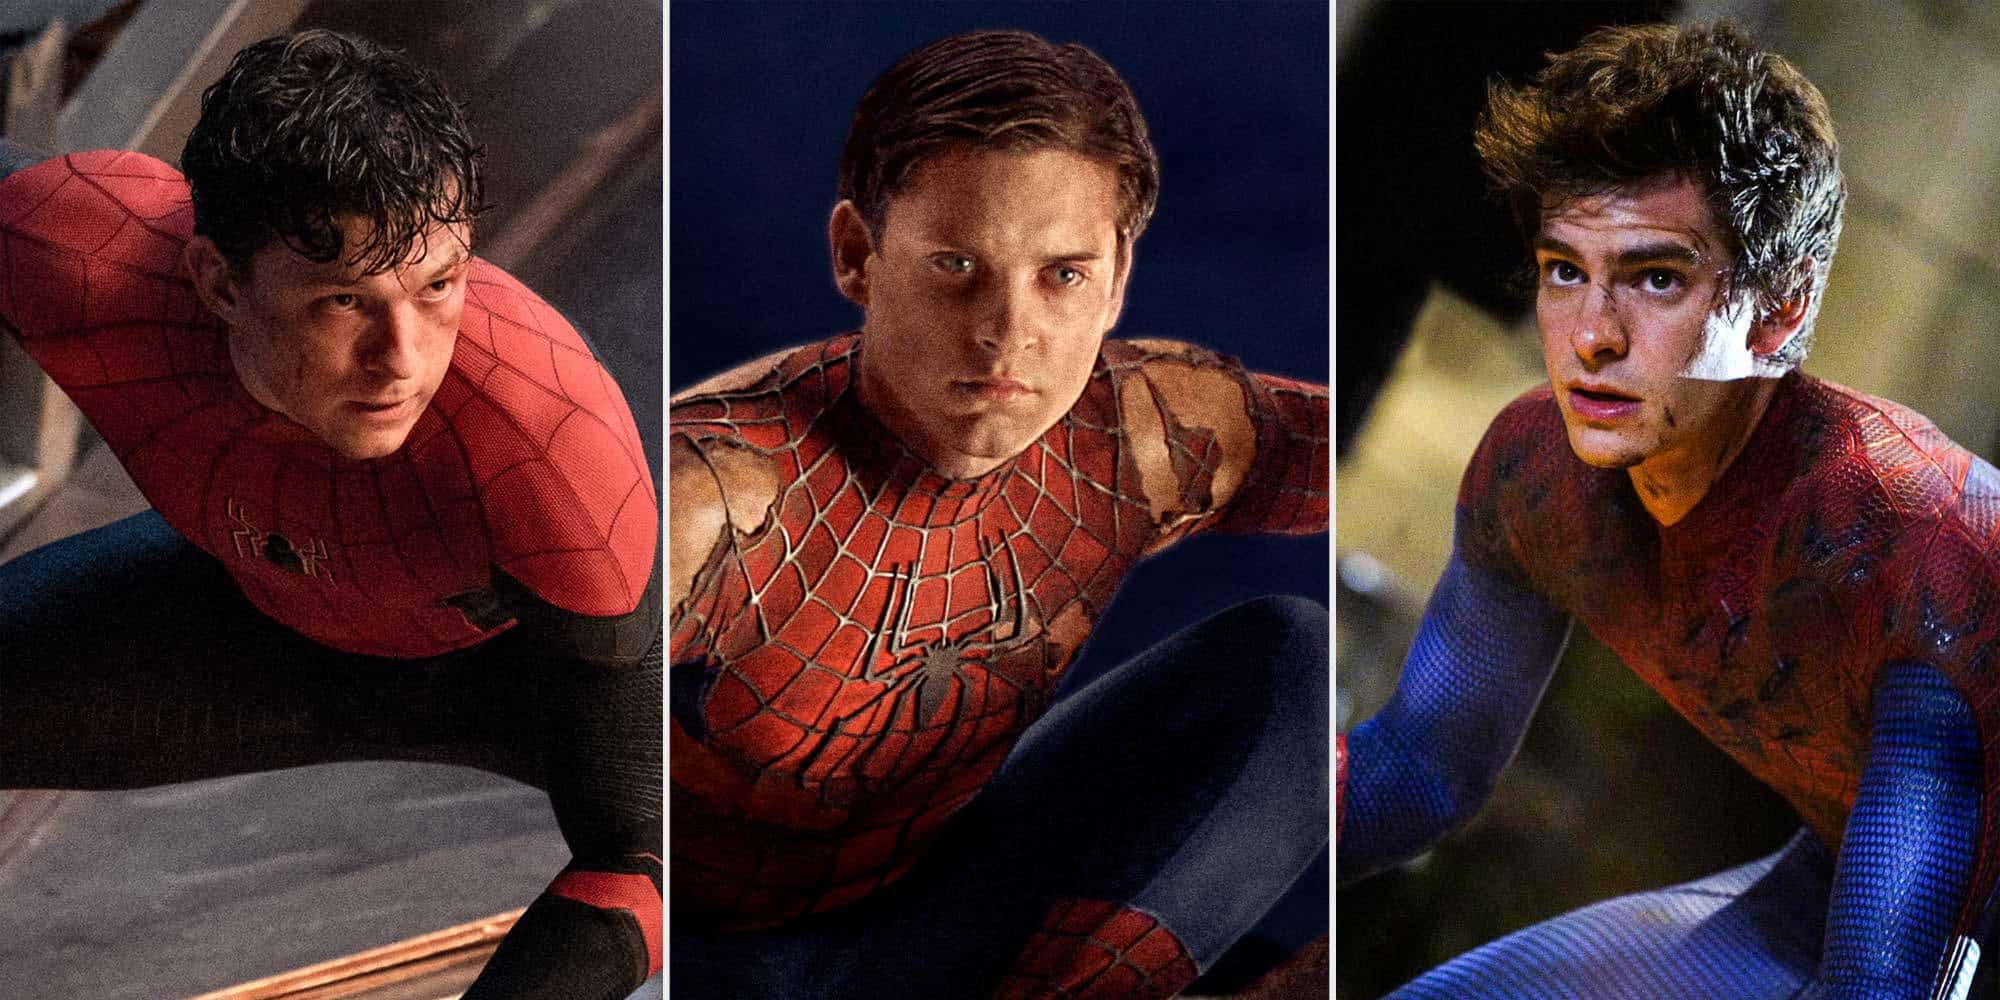 Οι 3 Spiderman που εμφανίστηκαν στη μεγάλη οθόνη τα τελευταία χρόνια